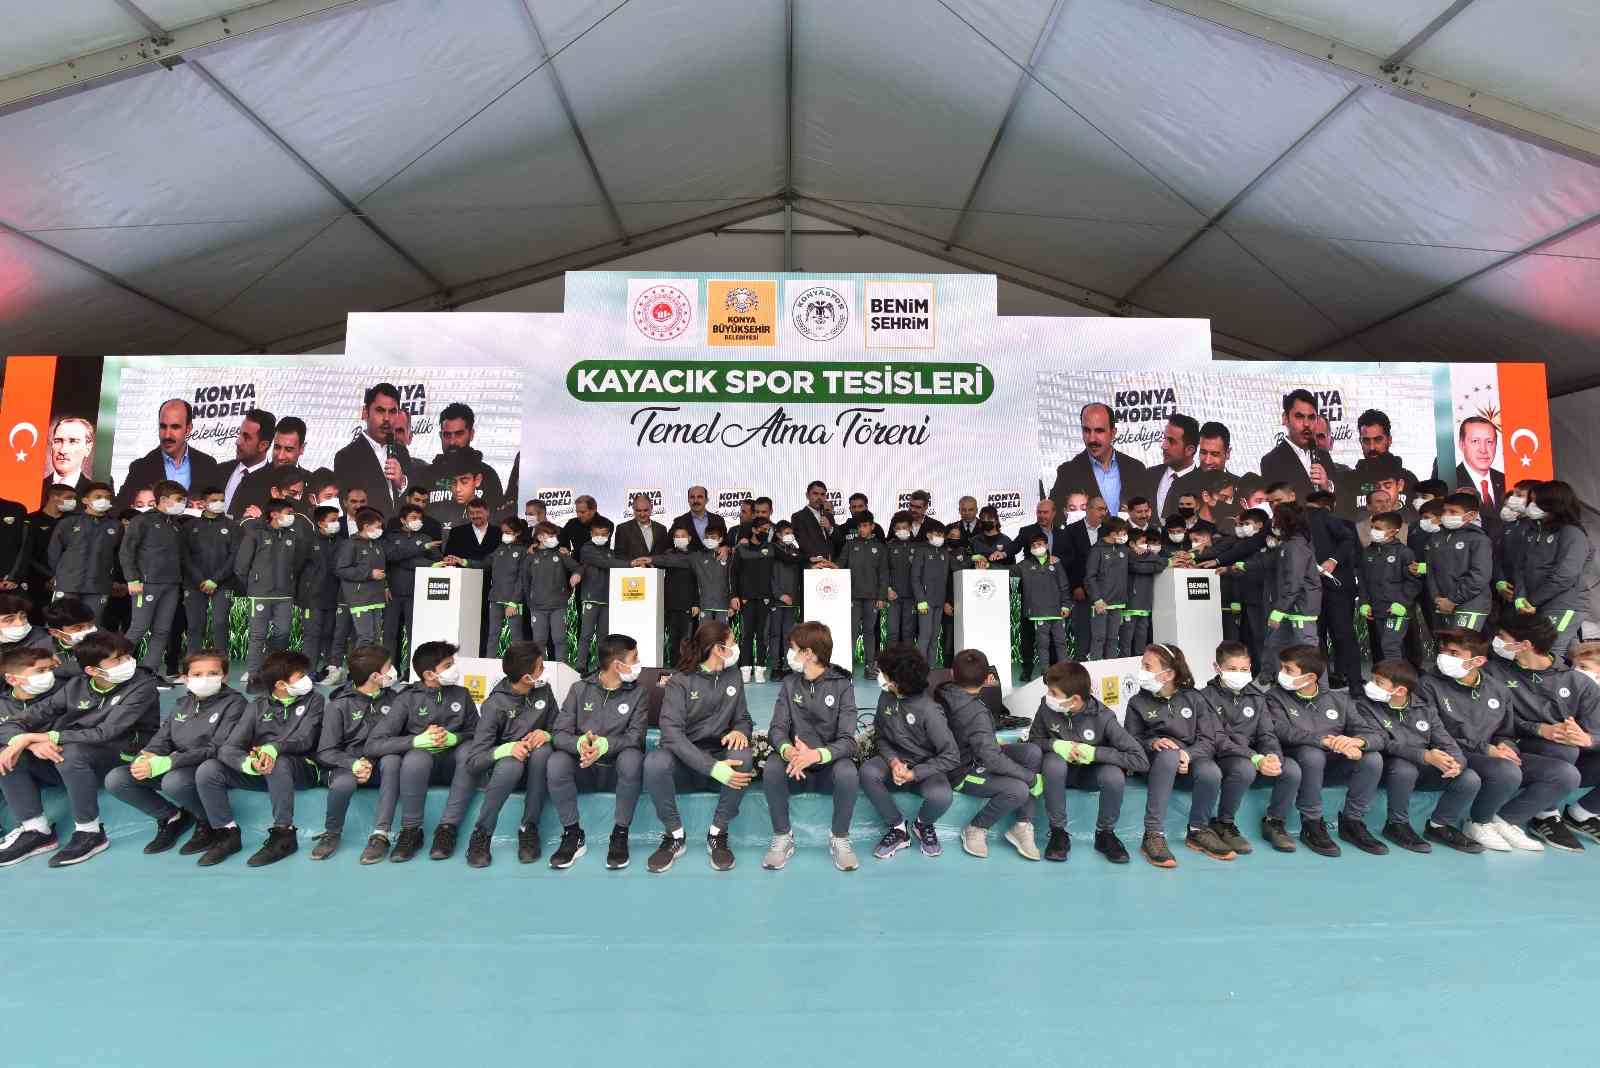 Konyaspor’un yeni tesisinin temeli Bakan Kurum’un katılımıyla atıldı #konya